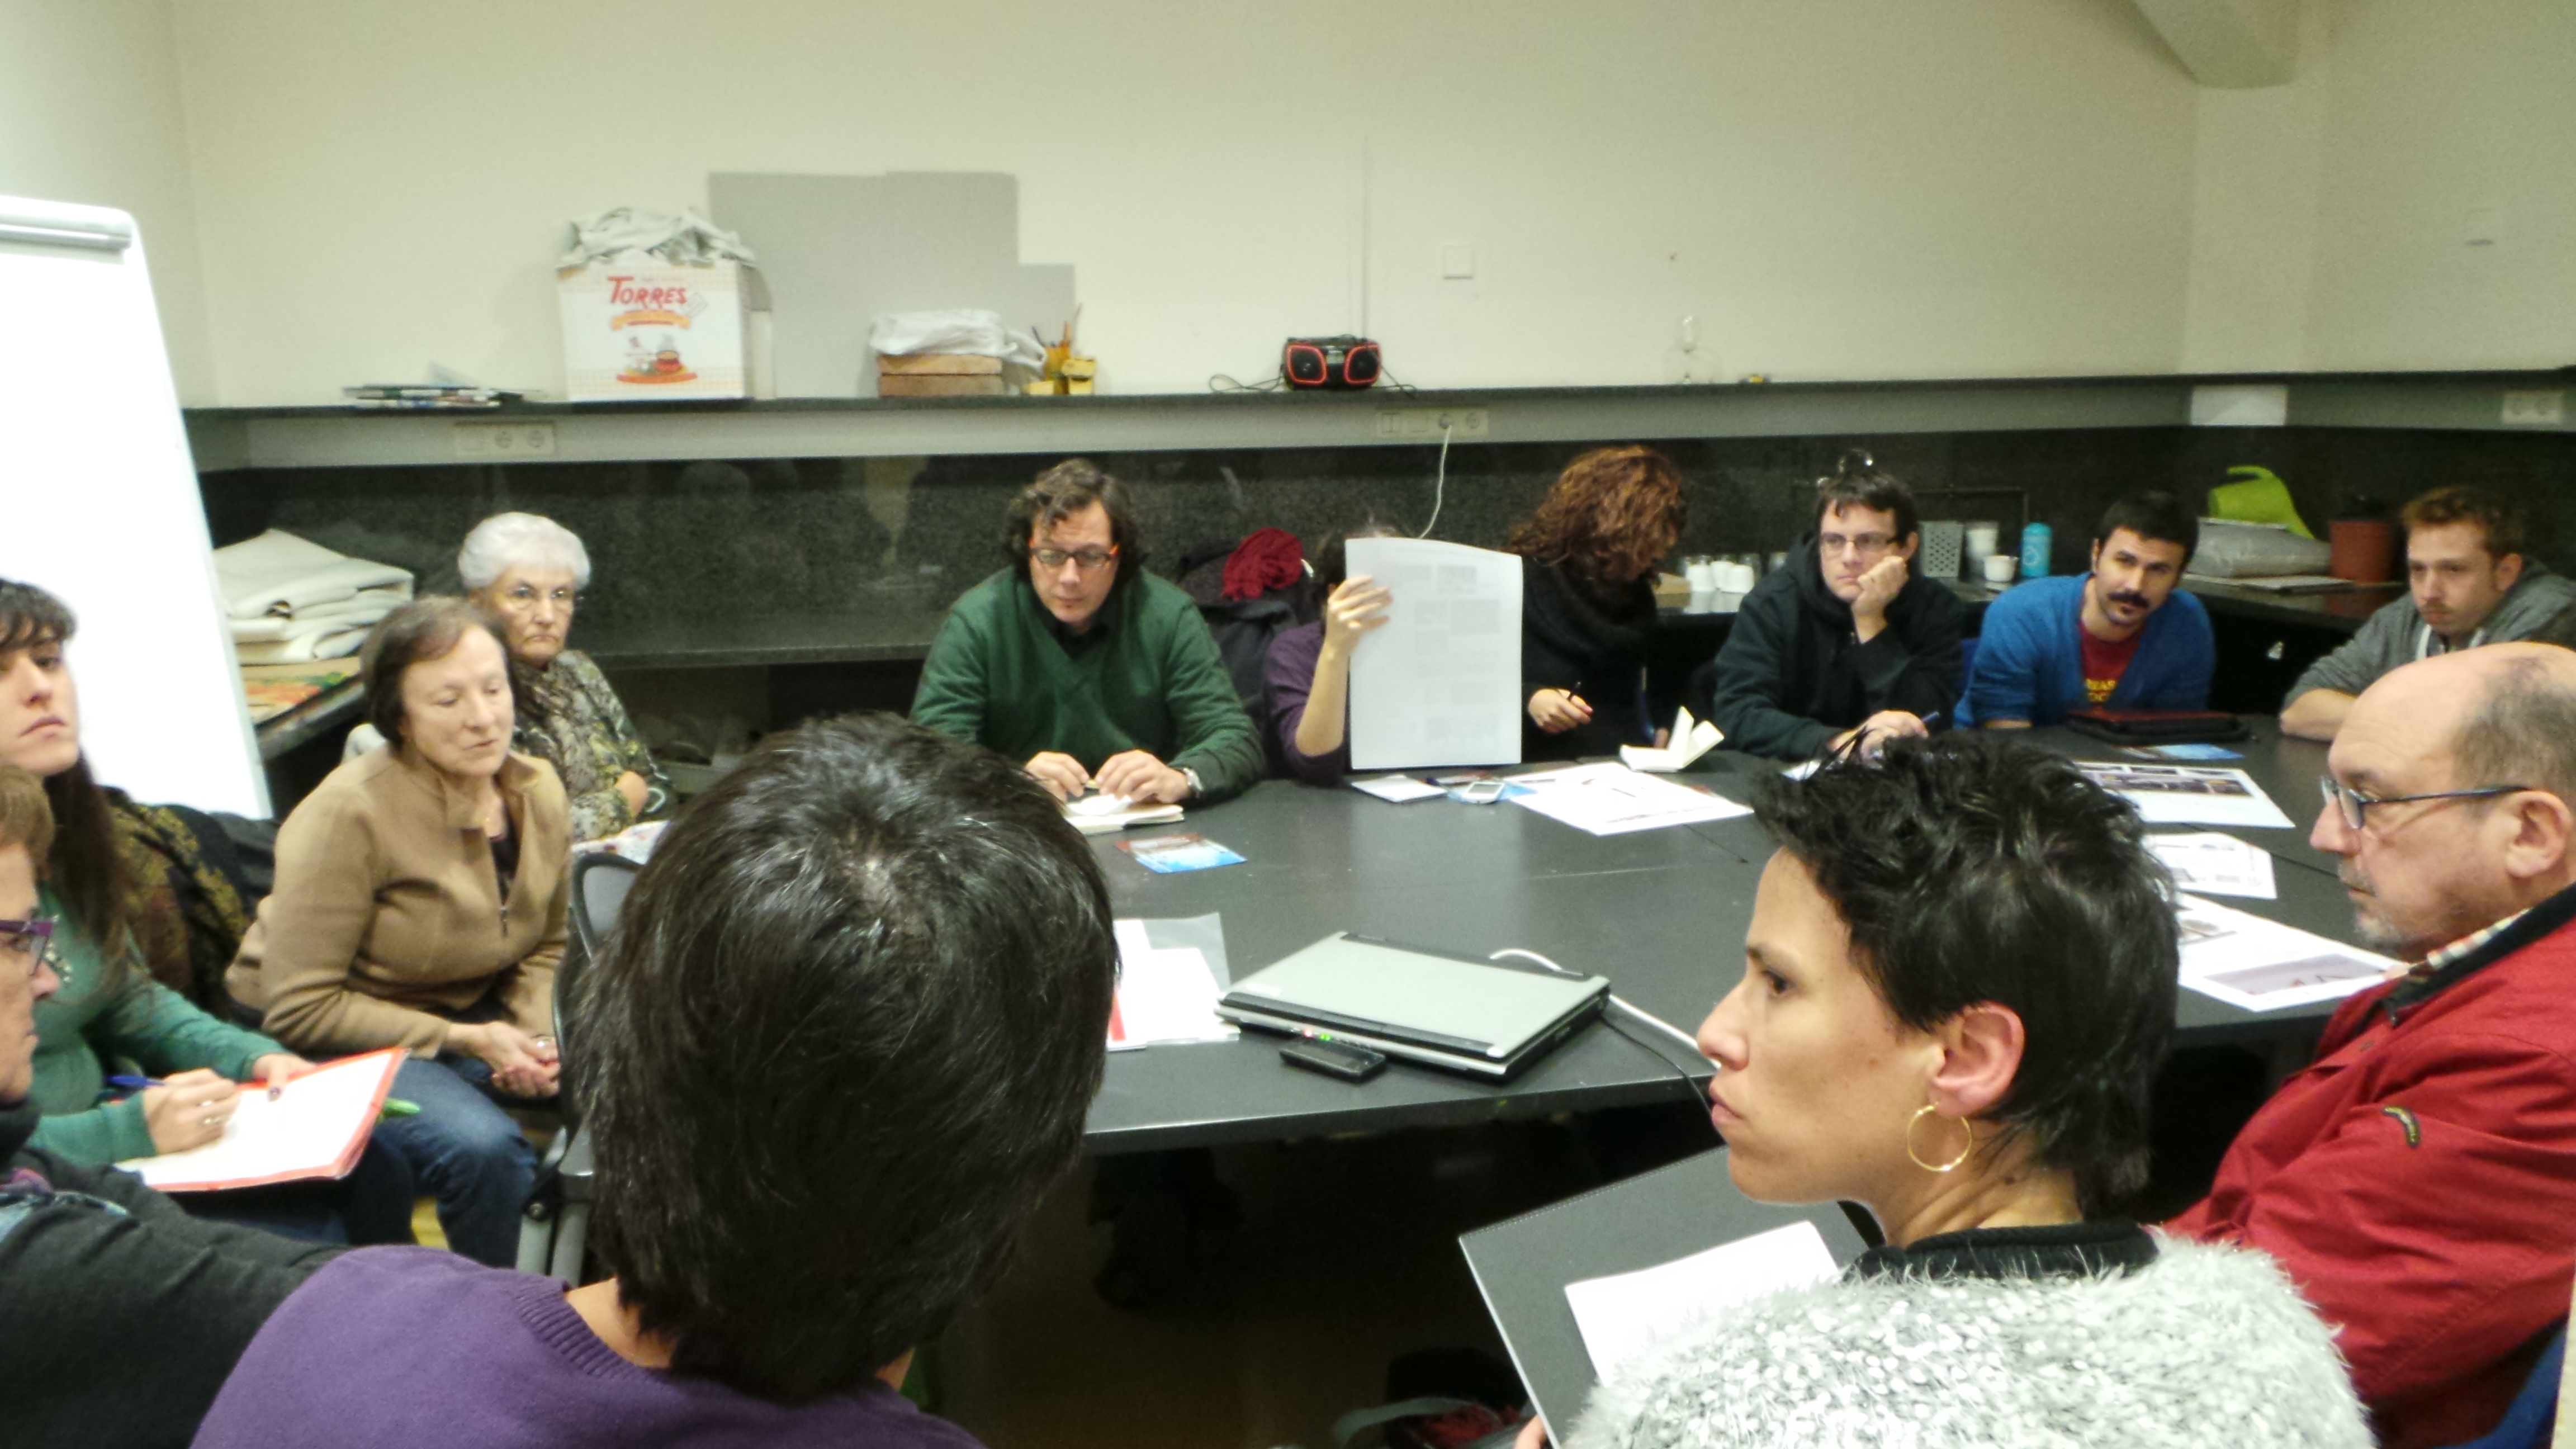 Primera reunión en el Centro Civico Can Deu de Les Corts, 20/11/2013